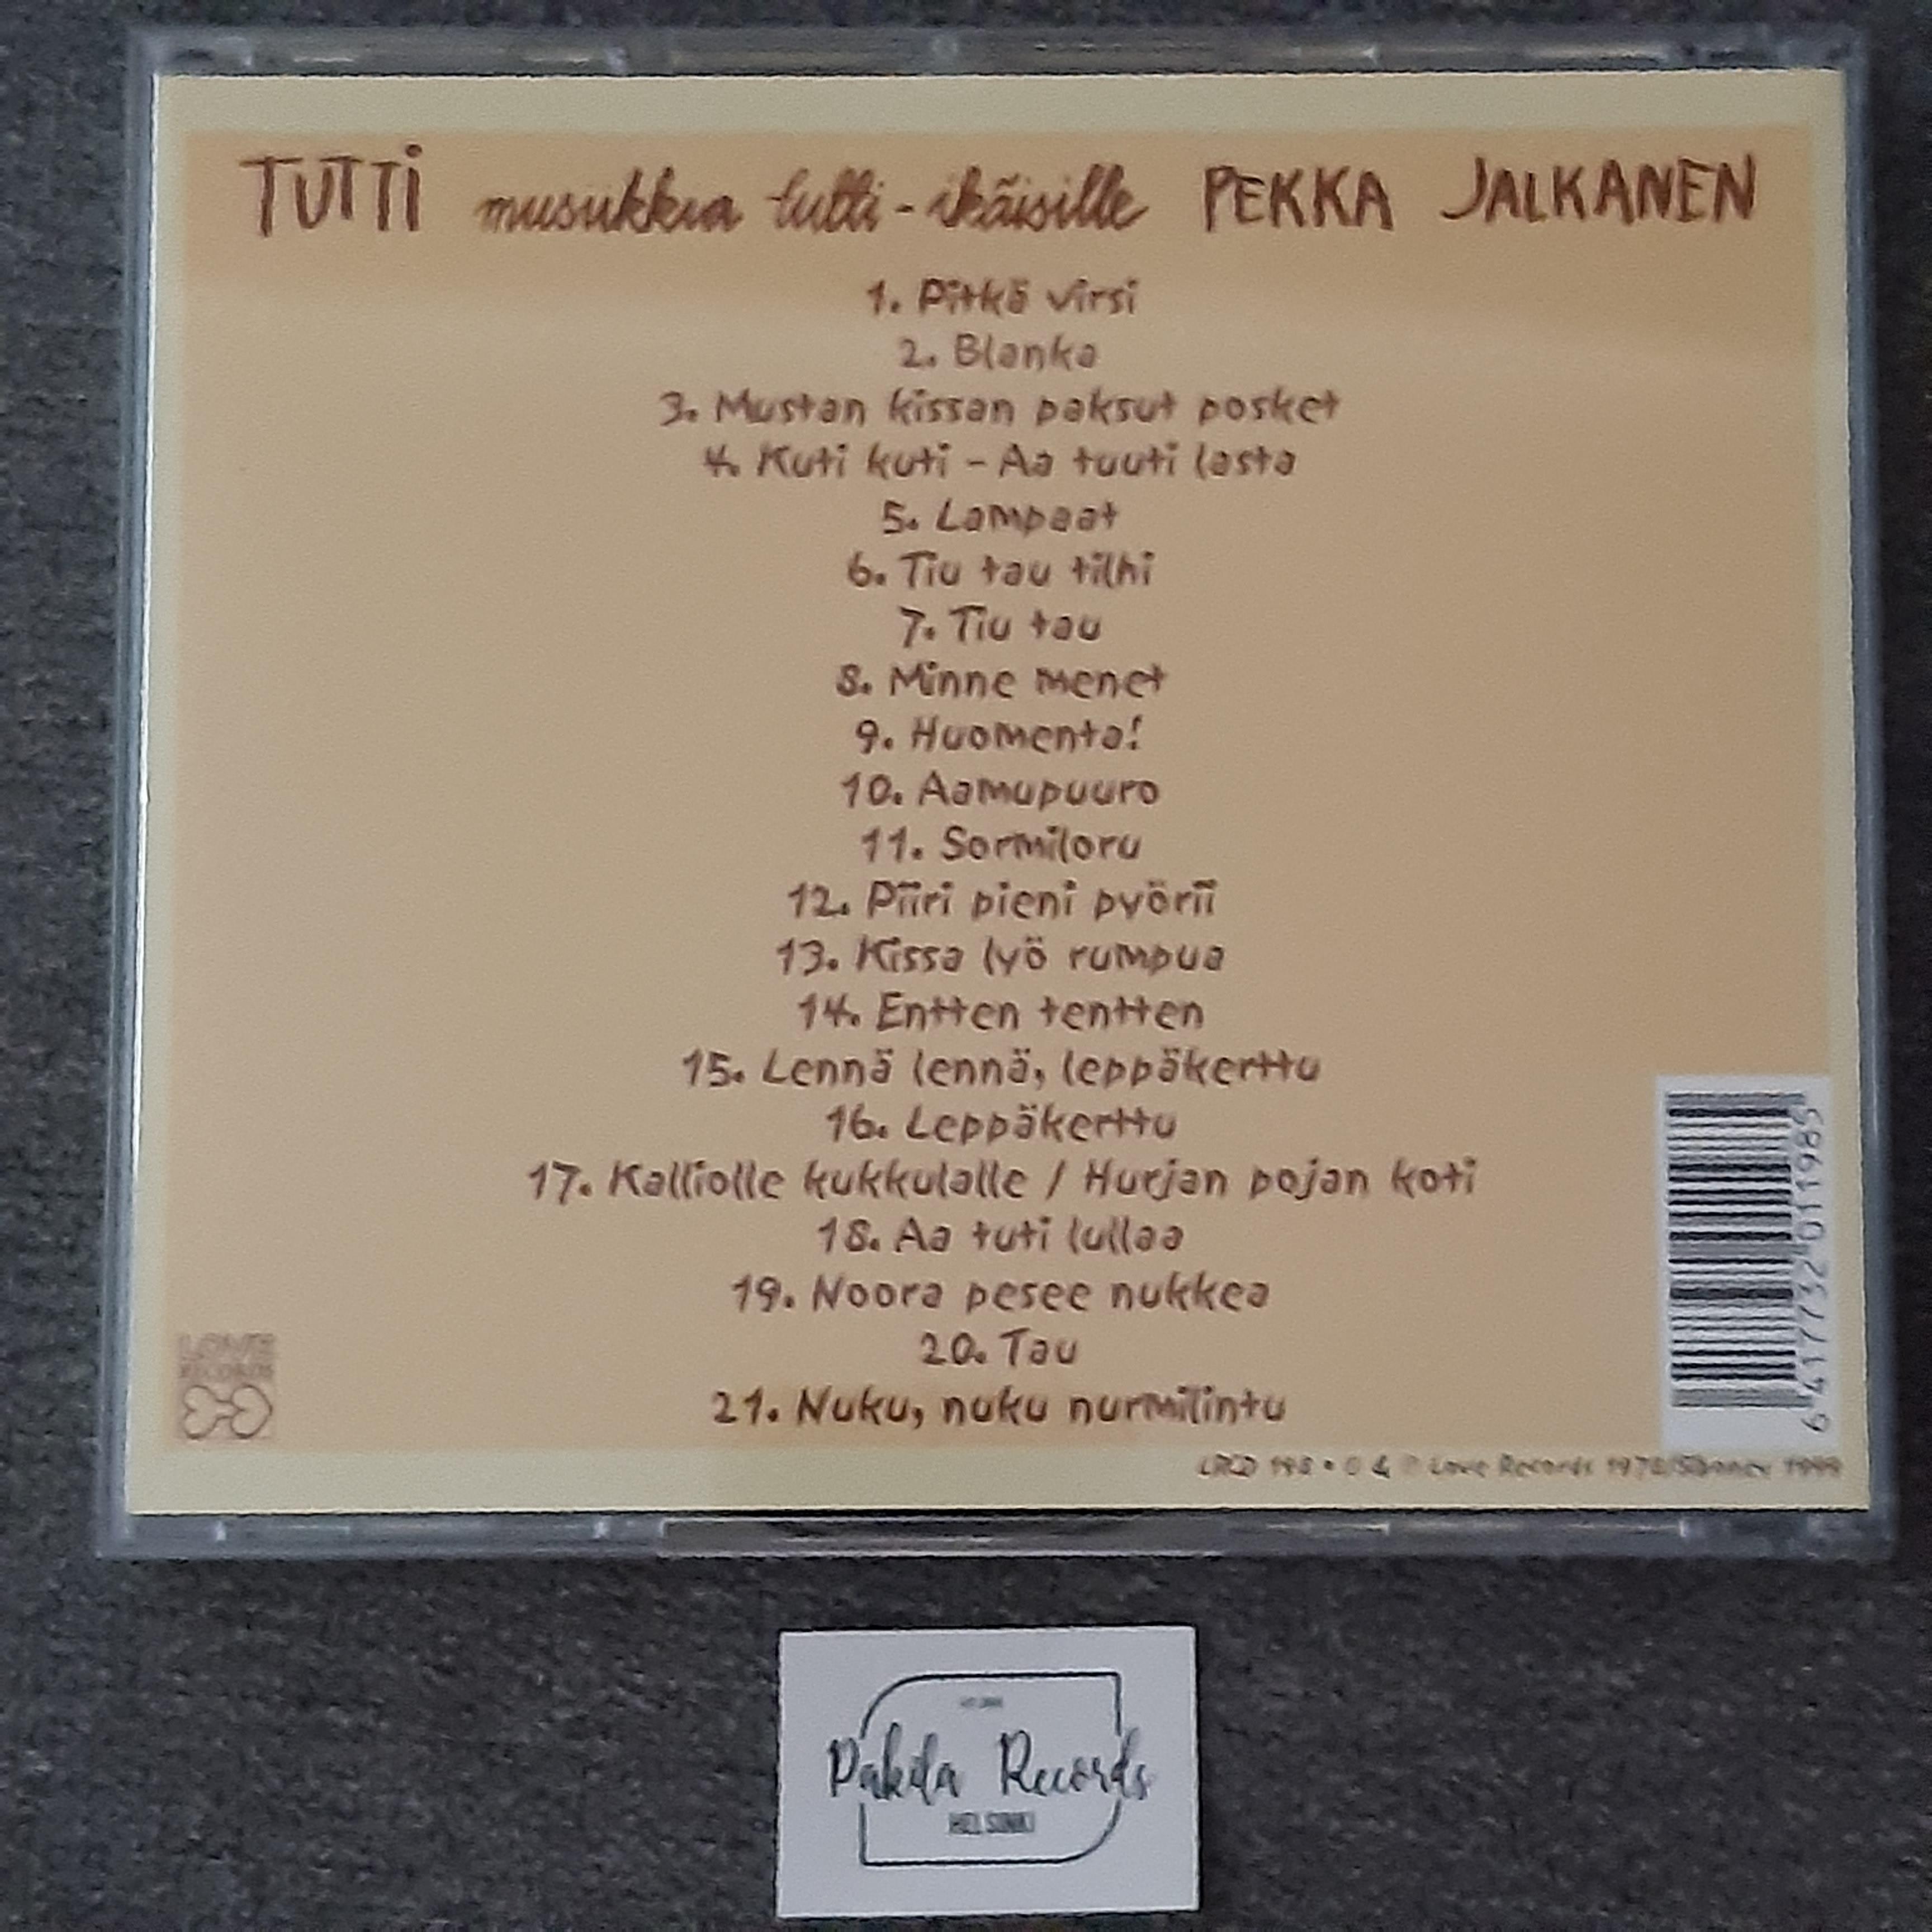 Pekka Jalkanen - Tutti, Musiikkia tutti-ikäisille - CD (käytetty)